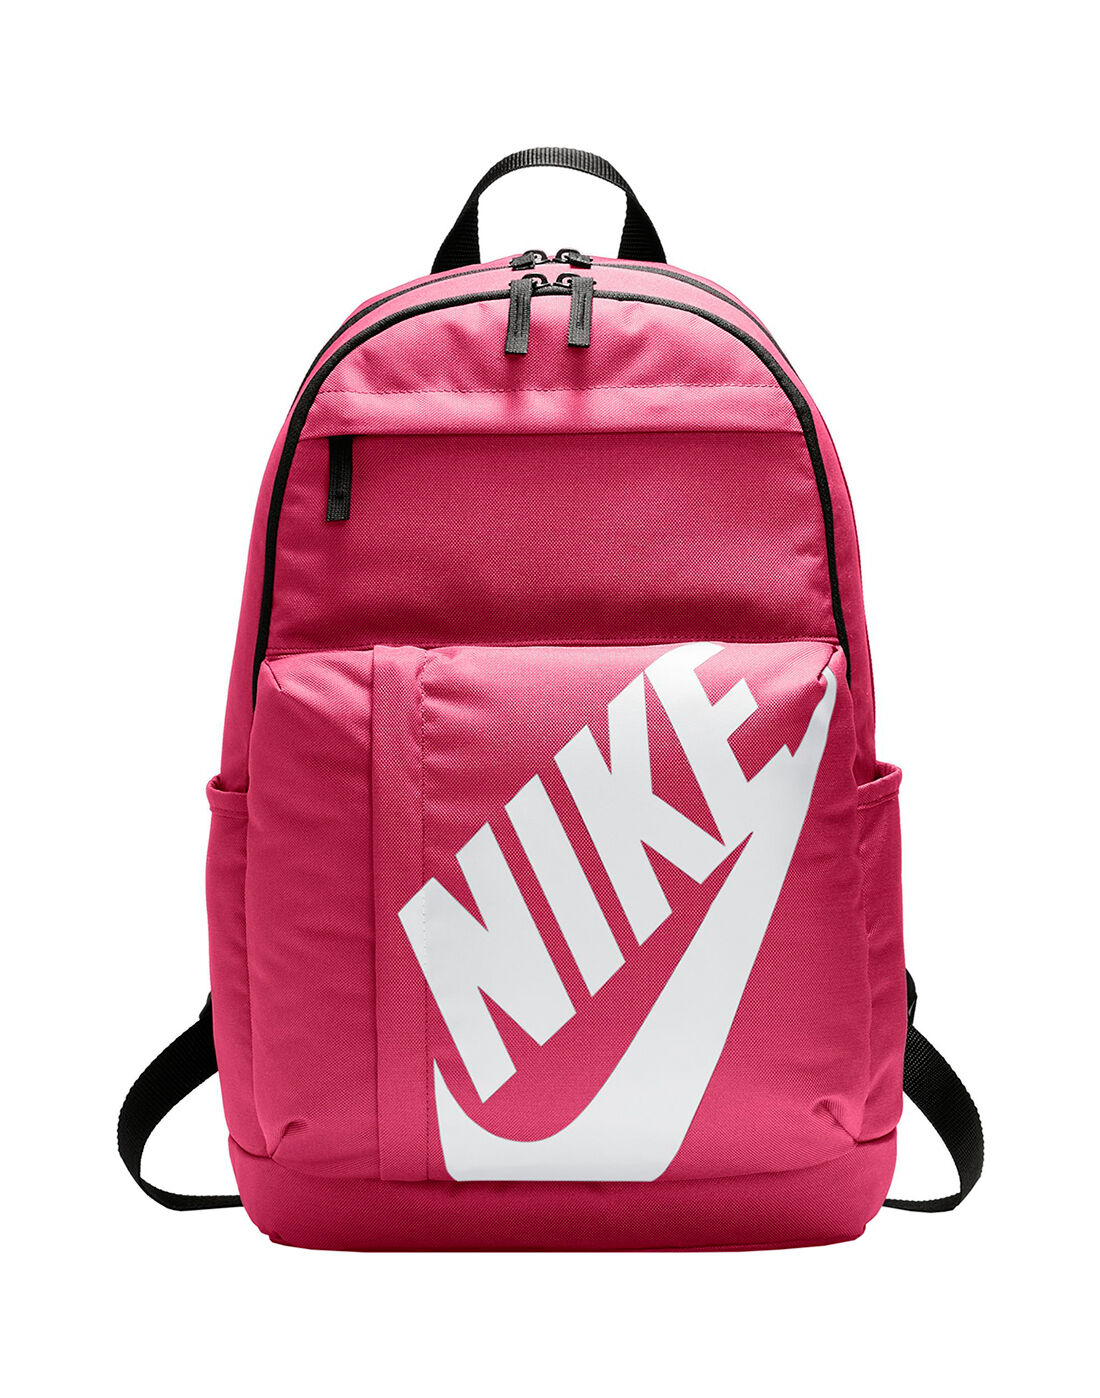 pink school bags nike 